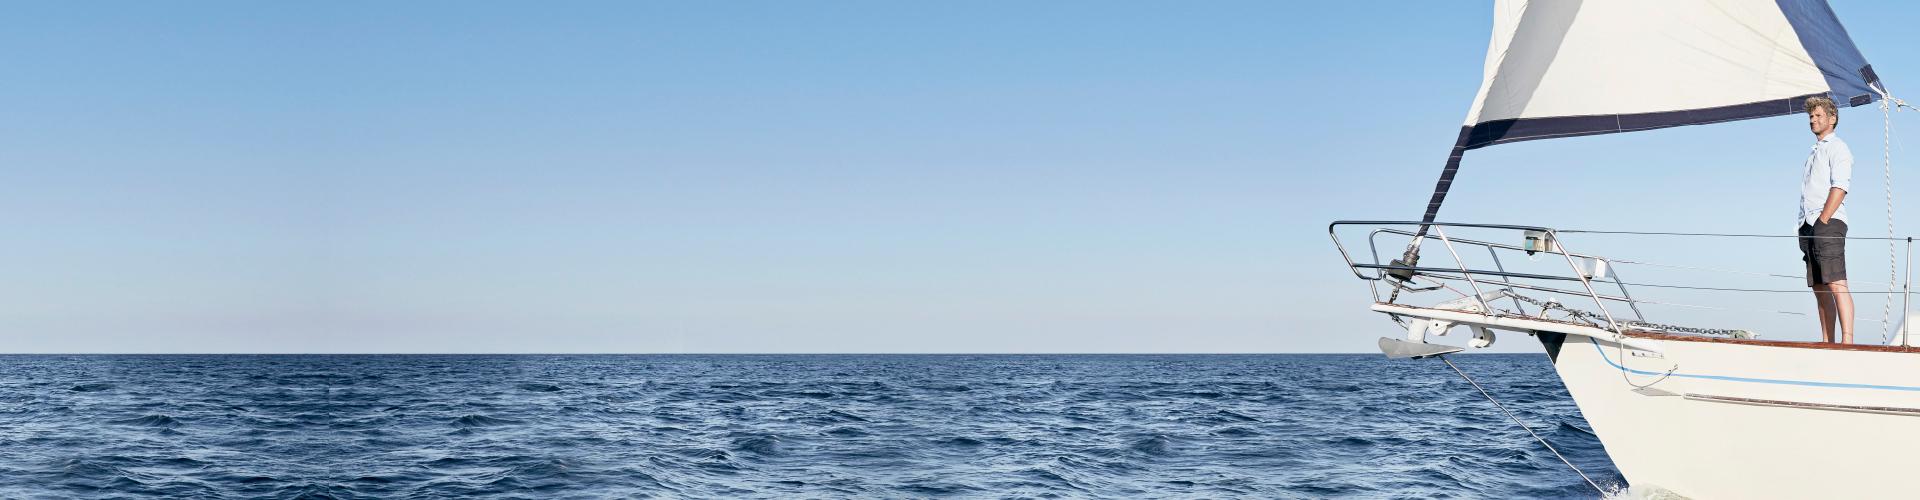 hombre-de-pie-en-su-velero-admirando-el-mar-tranquilamente.-navegar.-tranquilidad-